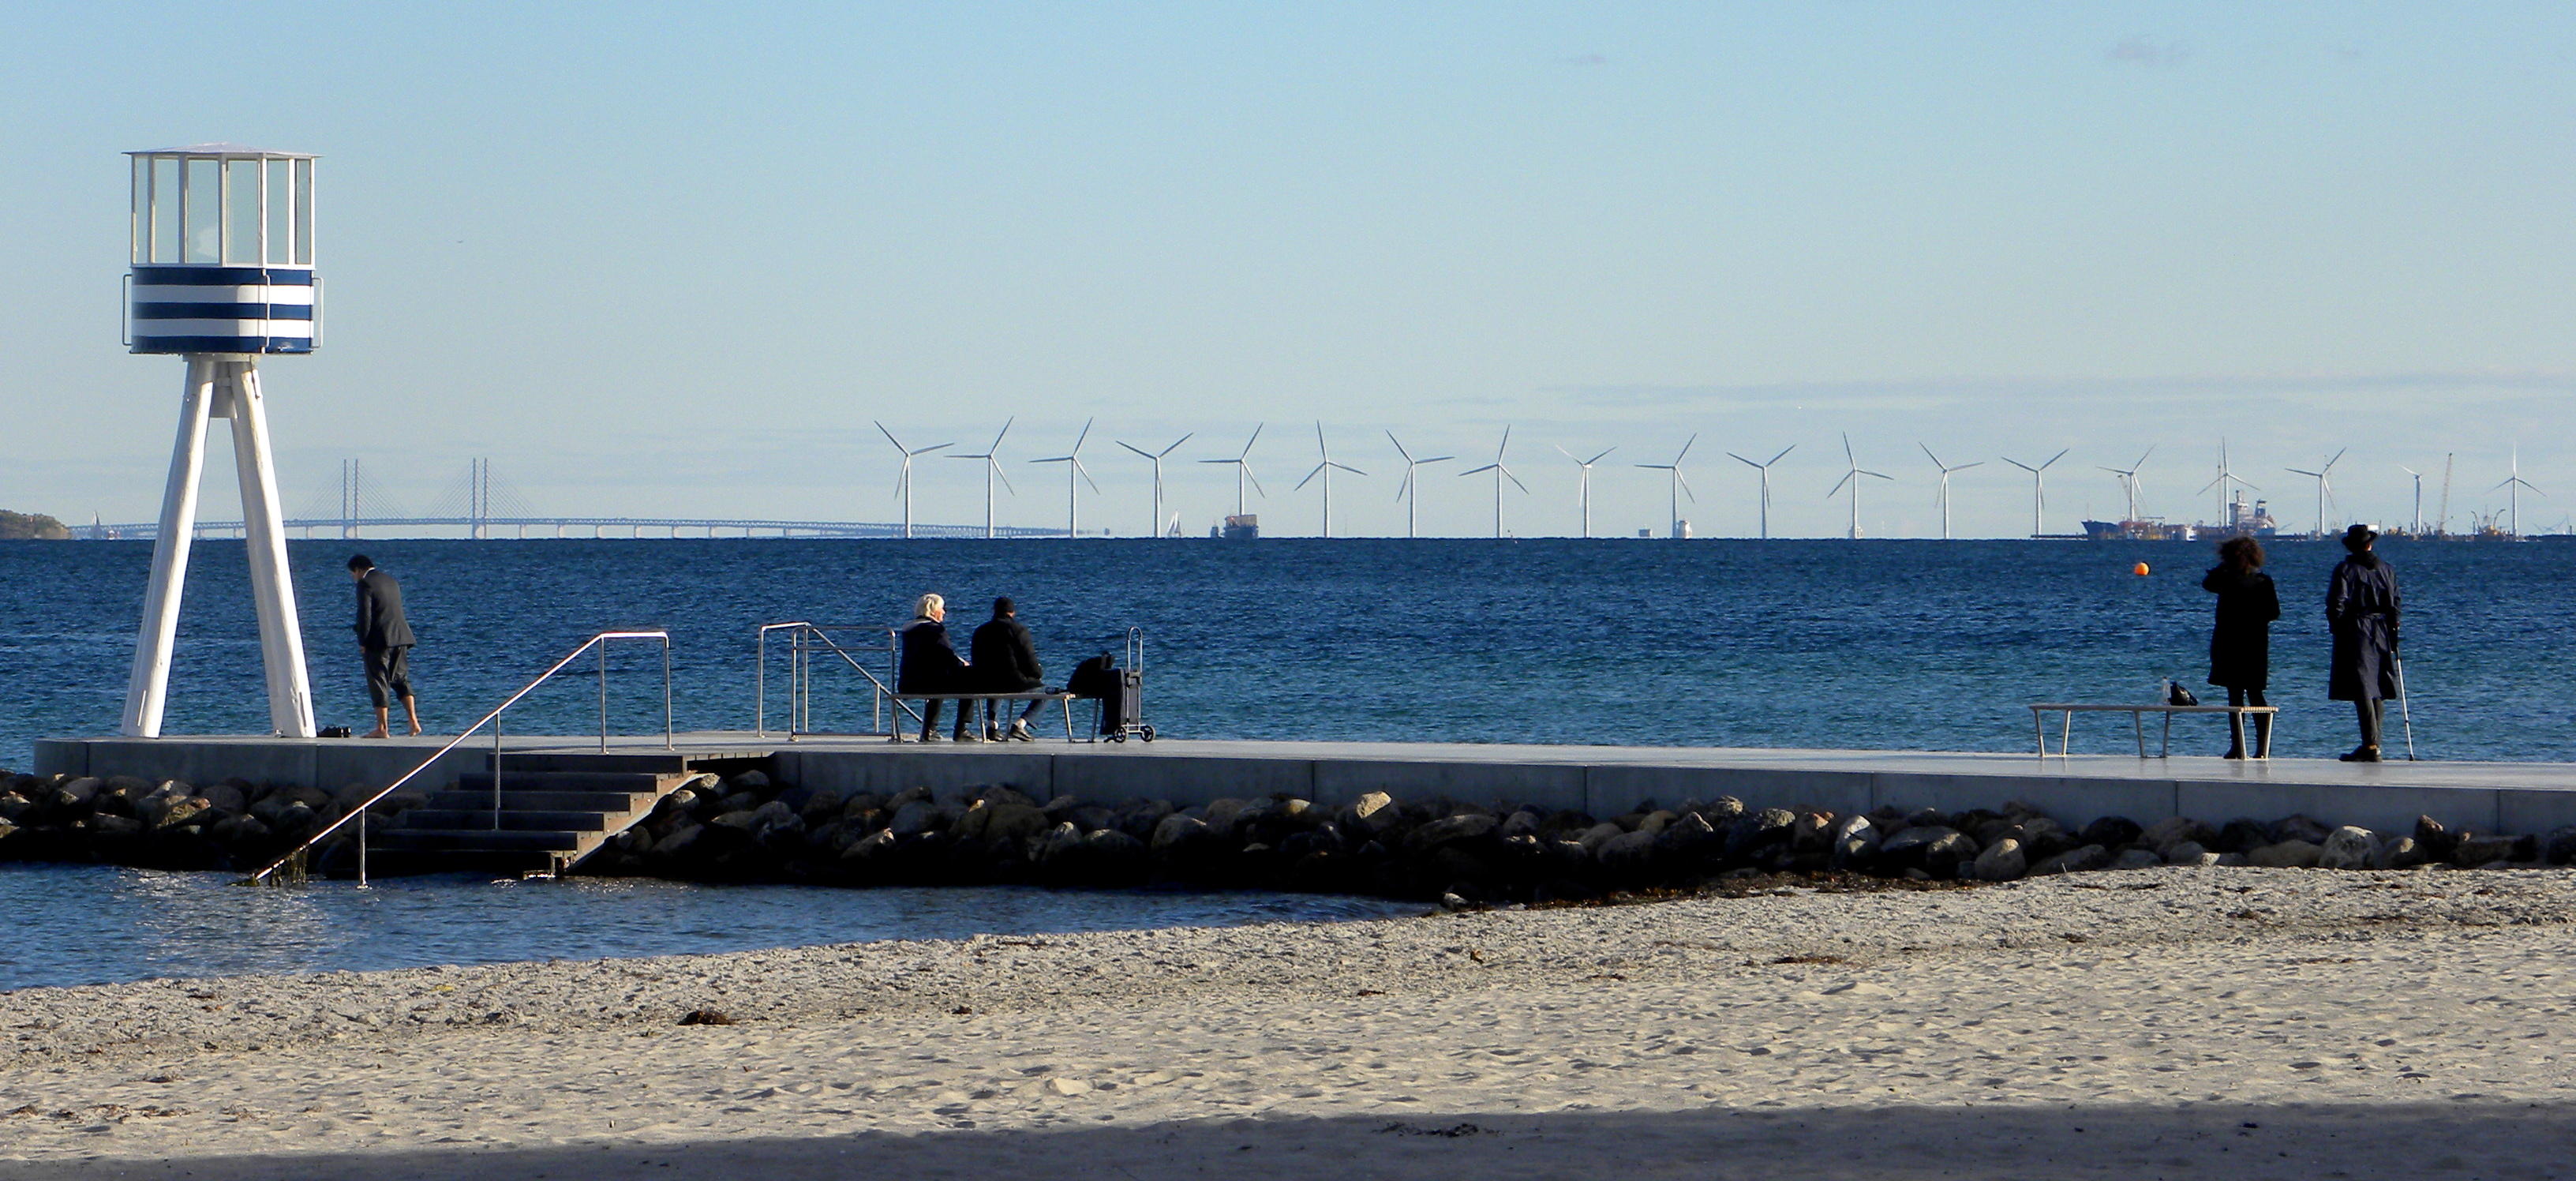 Windmills on the Horizon